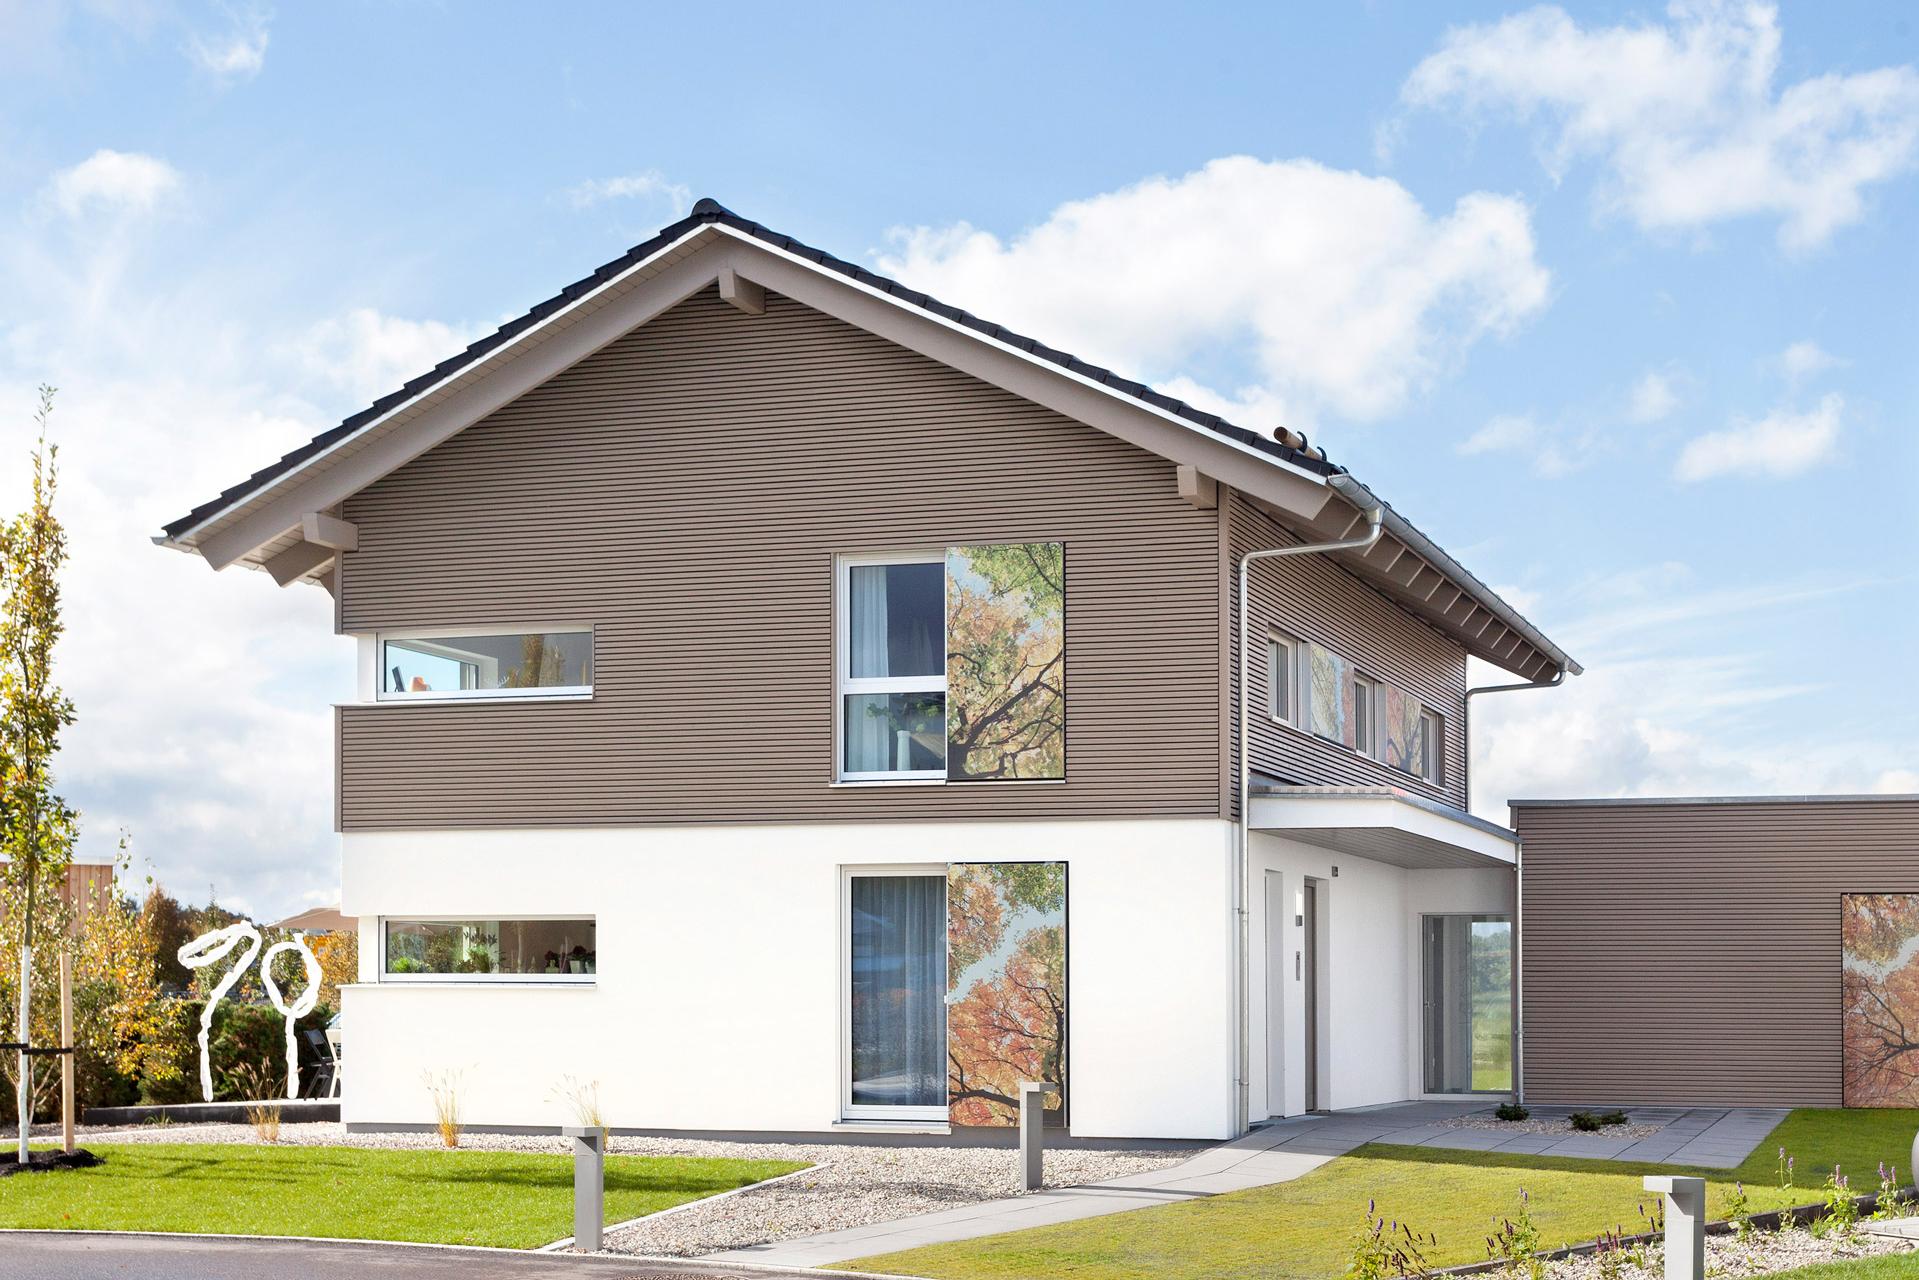 Maison à efficacité énergétique KfW 40 Plus à Günzburg